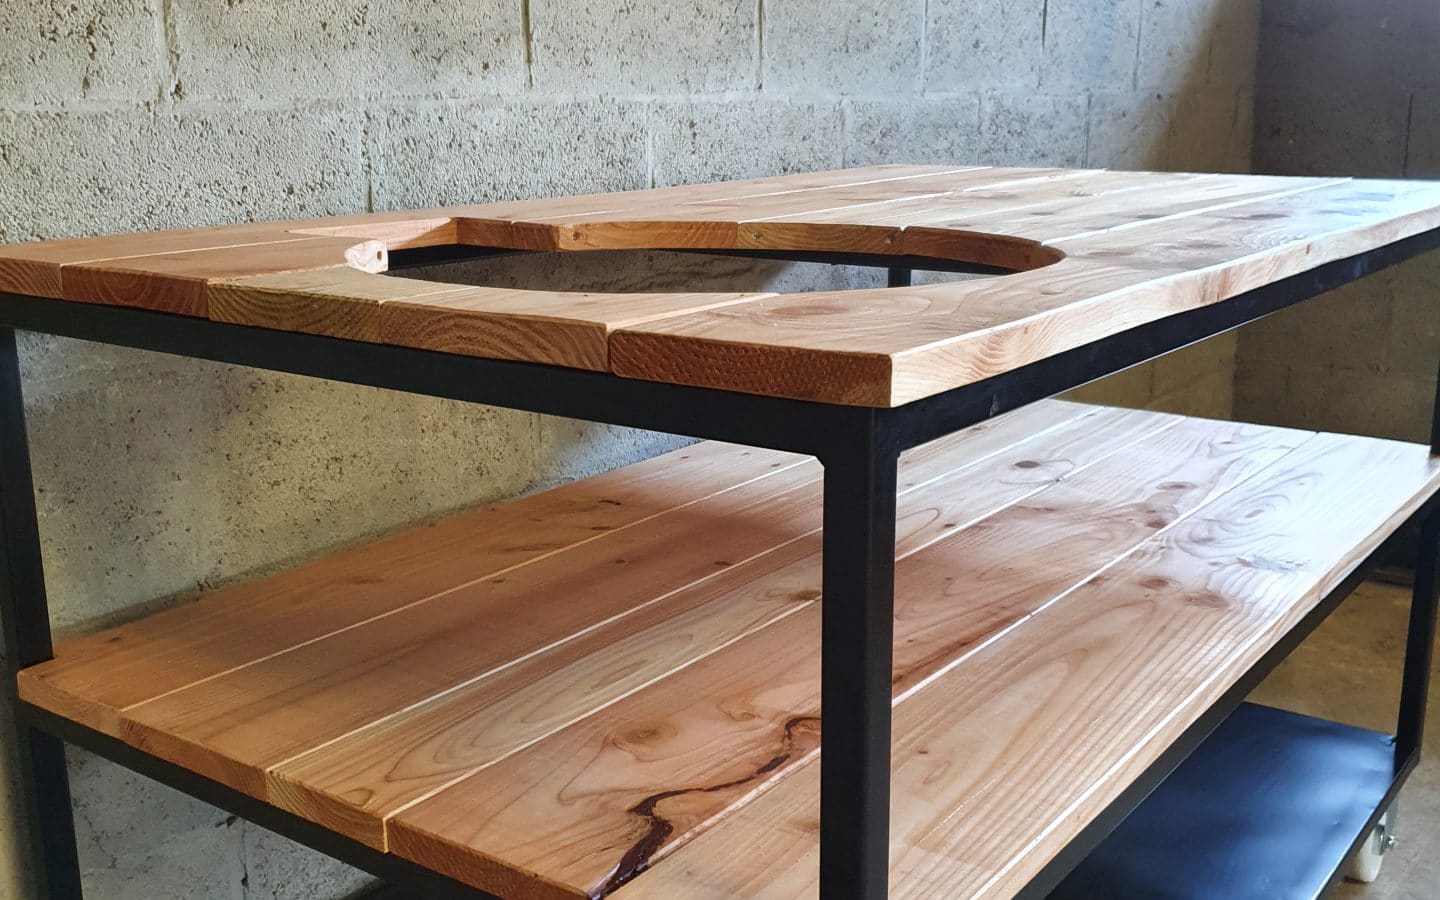 Schuin vooraanzicht van een tafel die bestaat uit 3 verdiepingen. Bovenste 2 zijn van hout en onderste is van staal. Er zit in een gat in het hout vaan een bbq.